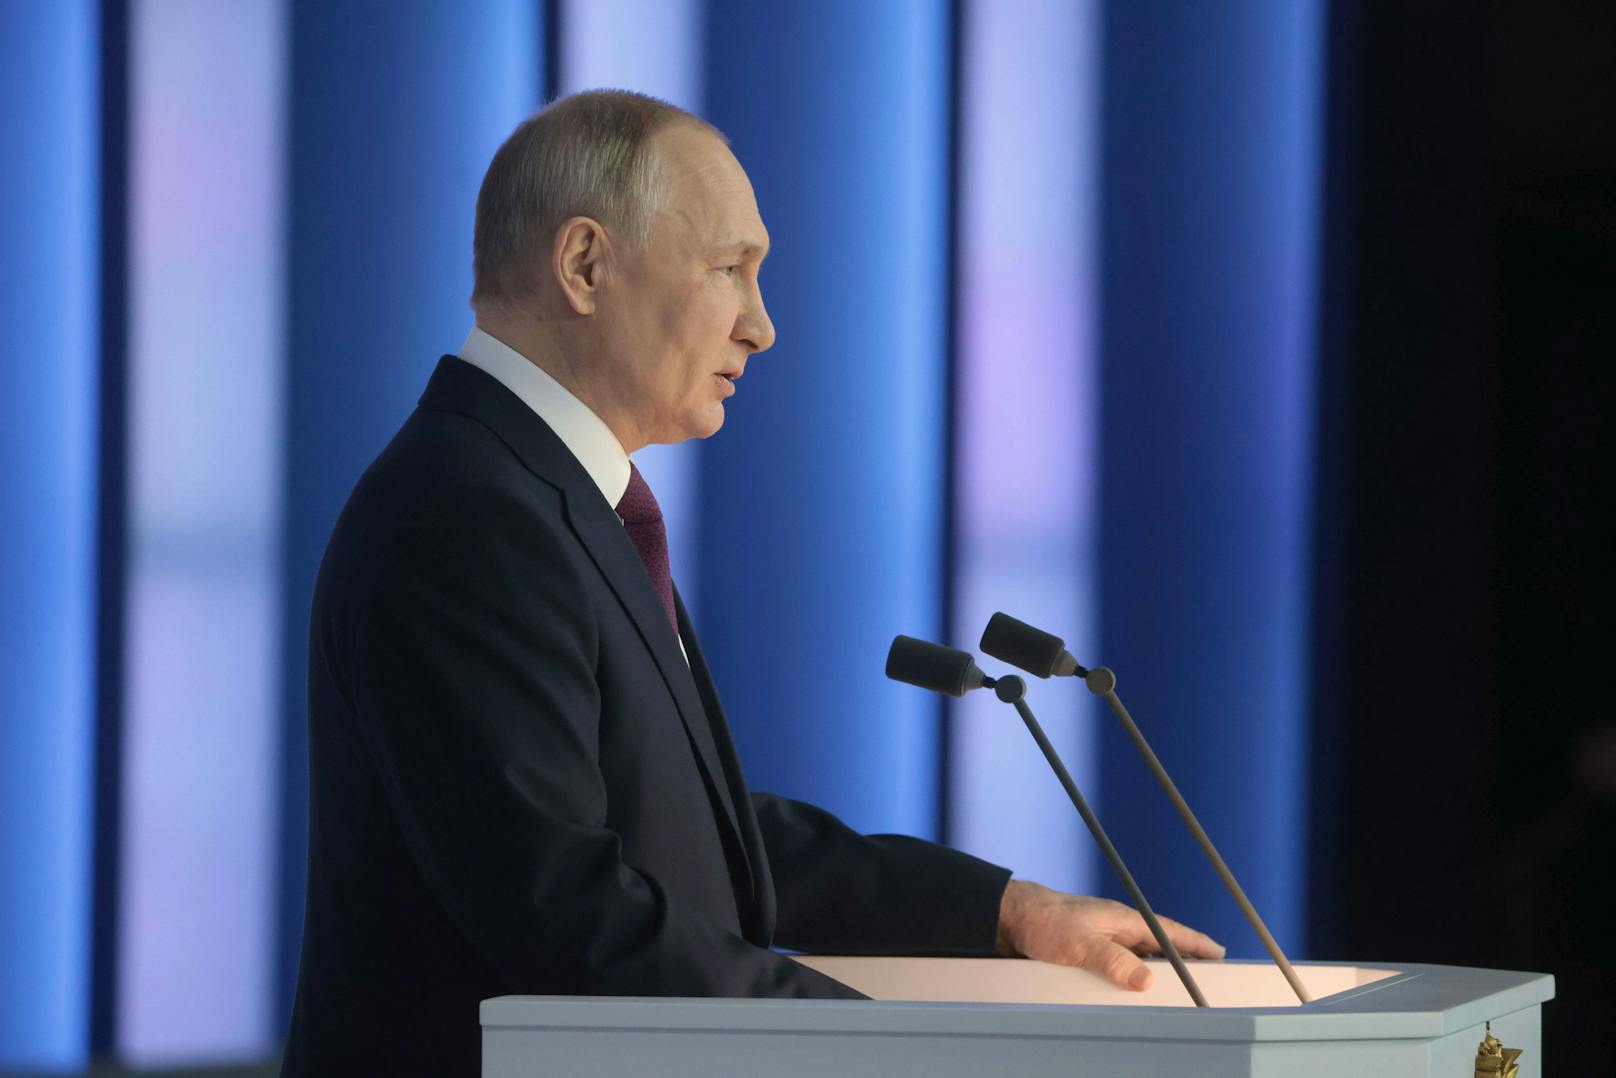 ... die Zukunft der Nation bestimmen werden", begann Putin seine lang erwartete Rede.